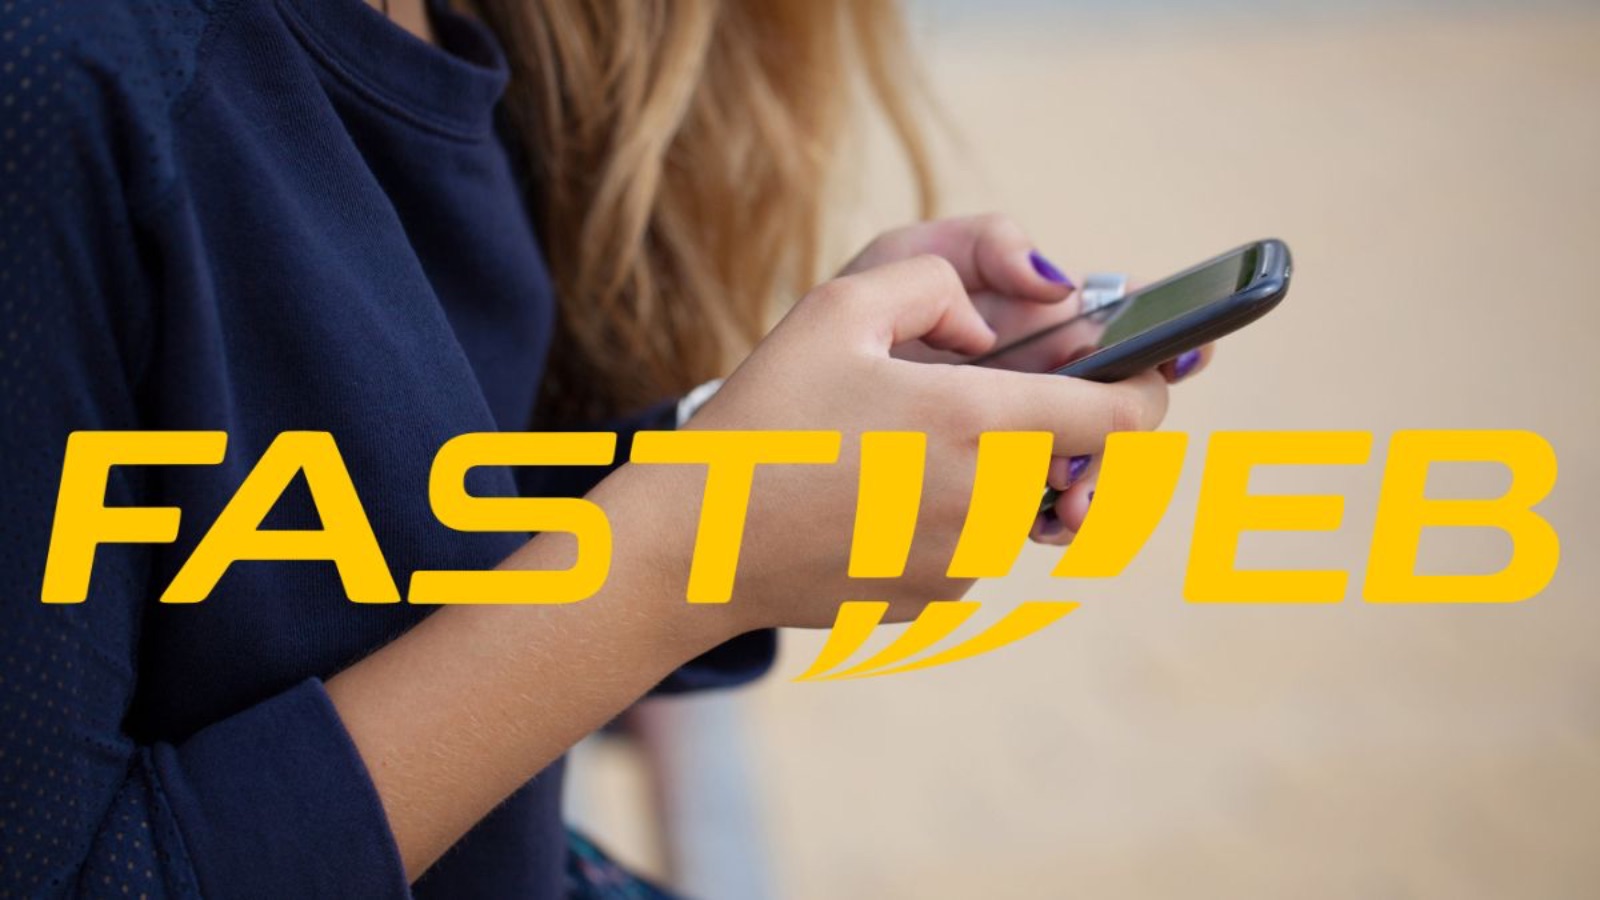 Fastweb, la magnifica offerta Mobile con 150 GB in 5G è gratis 3 mesi